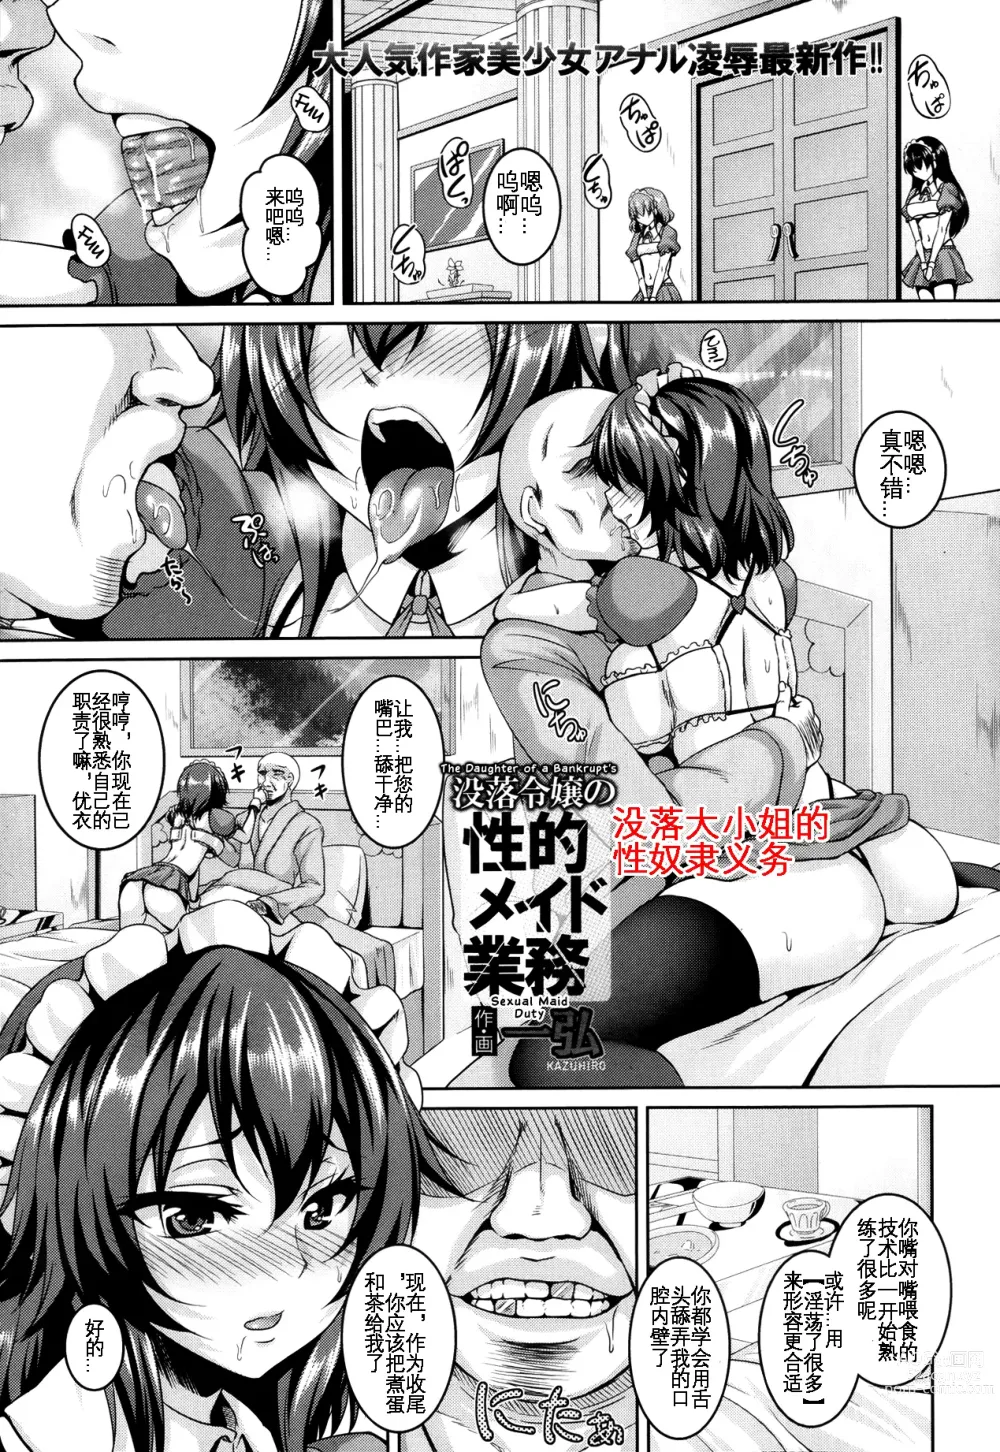 Page 2 of manga 没落大小姐的 性奴隶义务